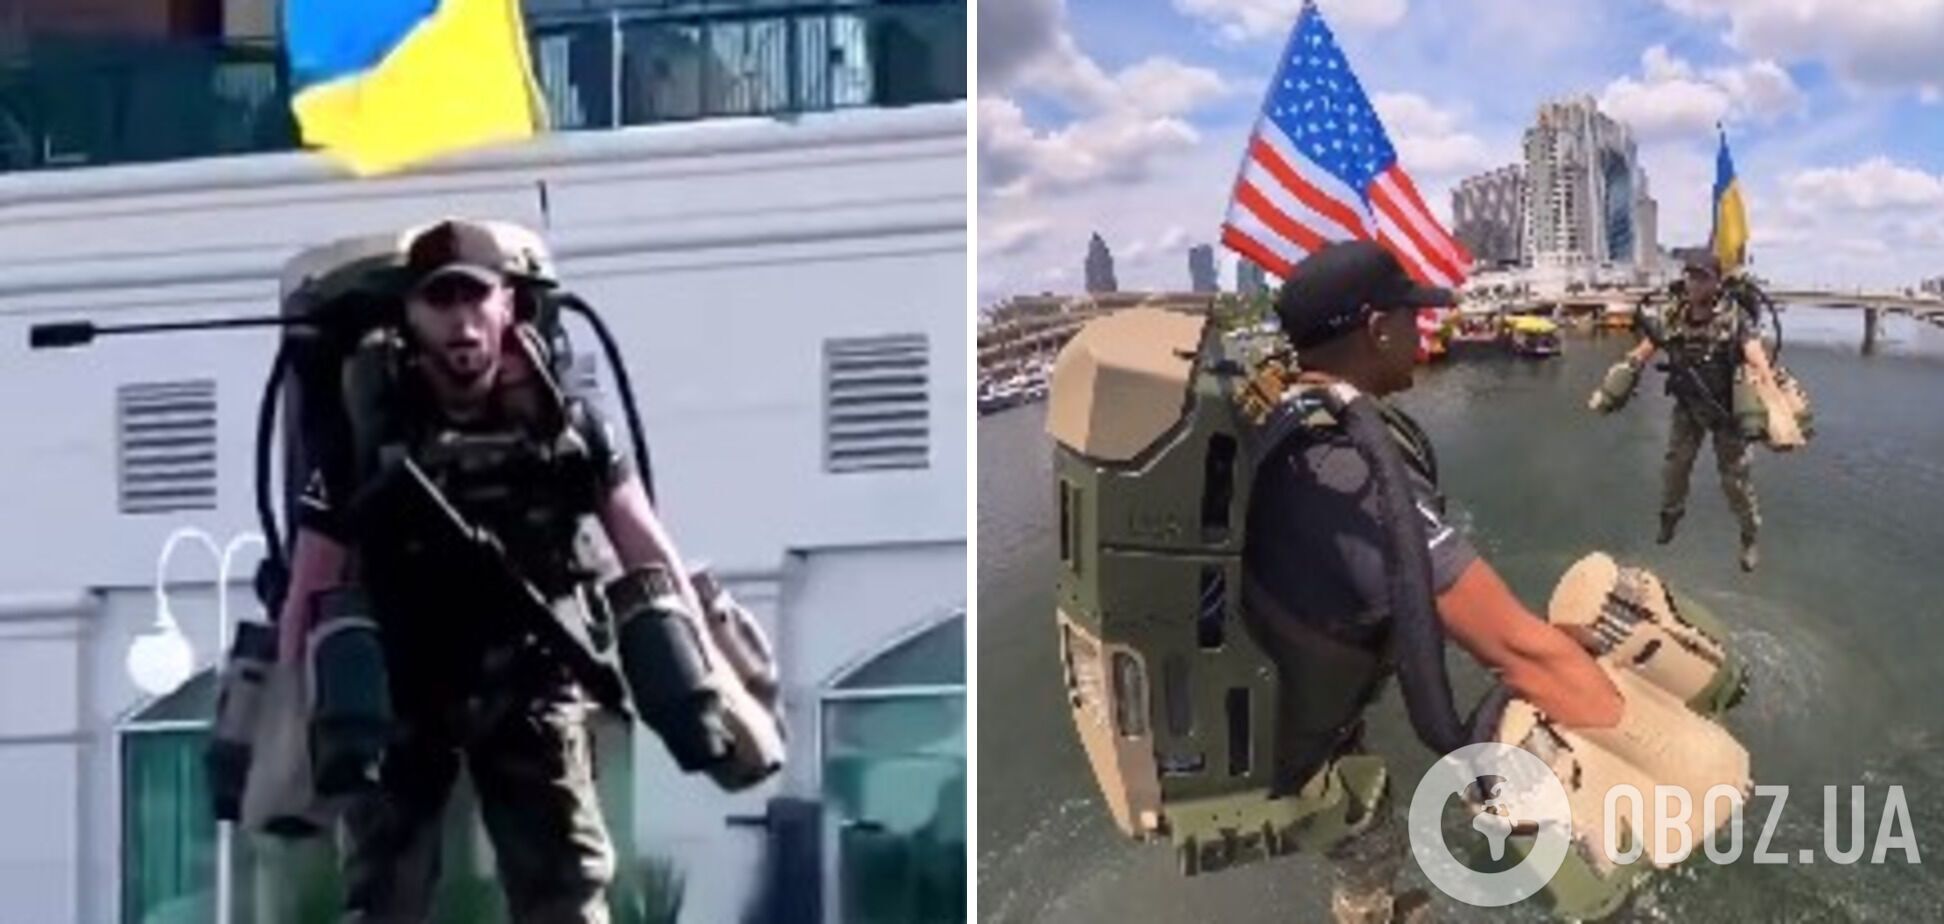 Военный с флагом Украины протестовал реактивный рюкзак Rocket Pack